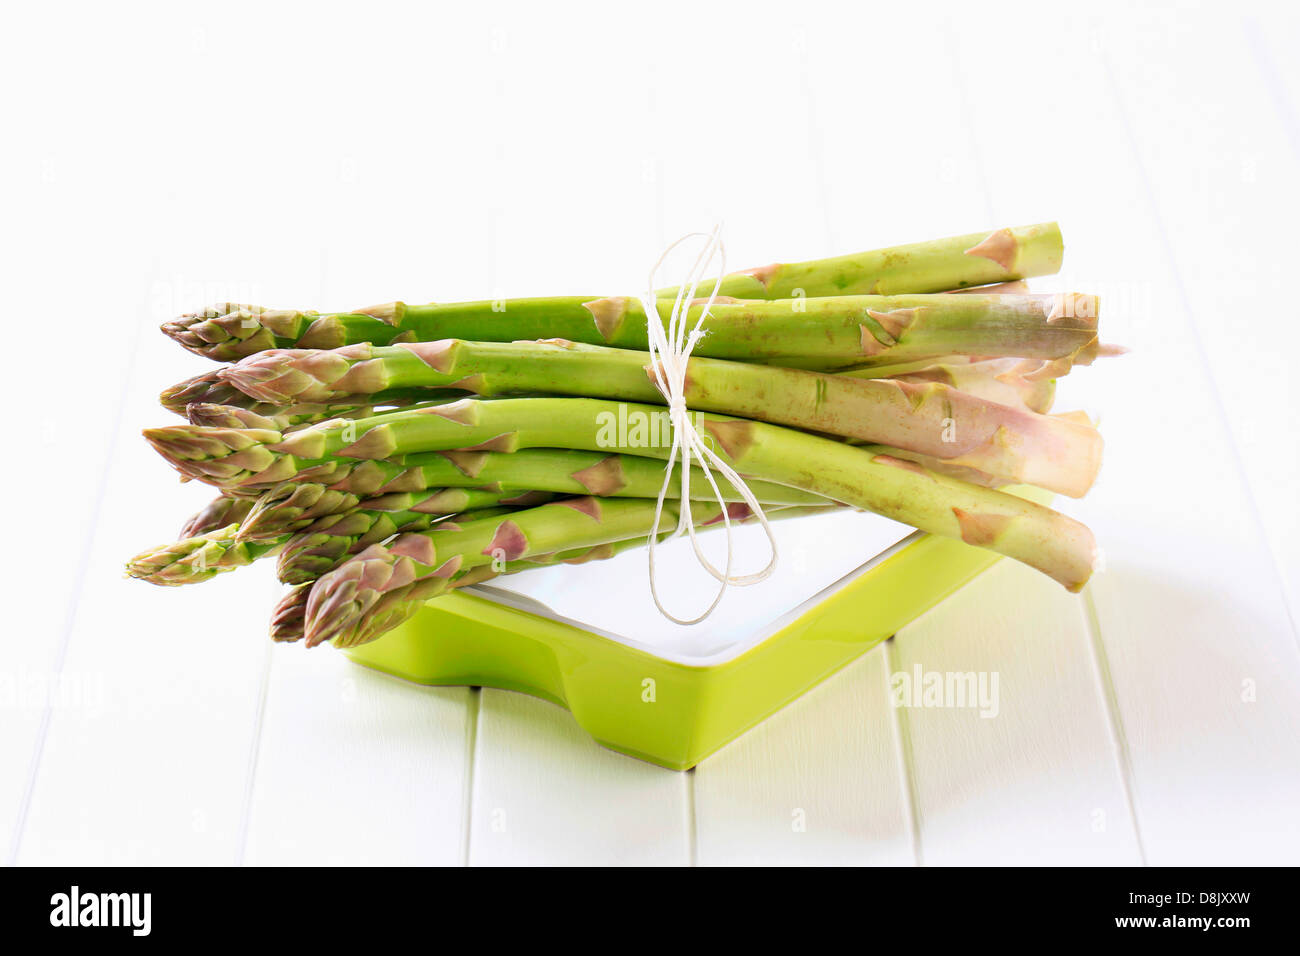 Asparagi freschi spears legate in un fascio Foto Stock